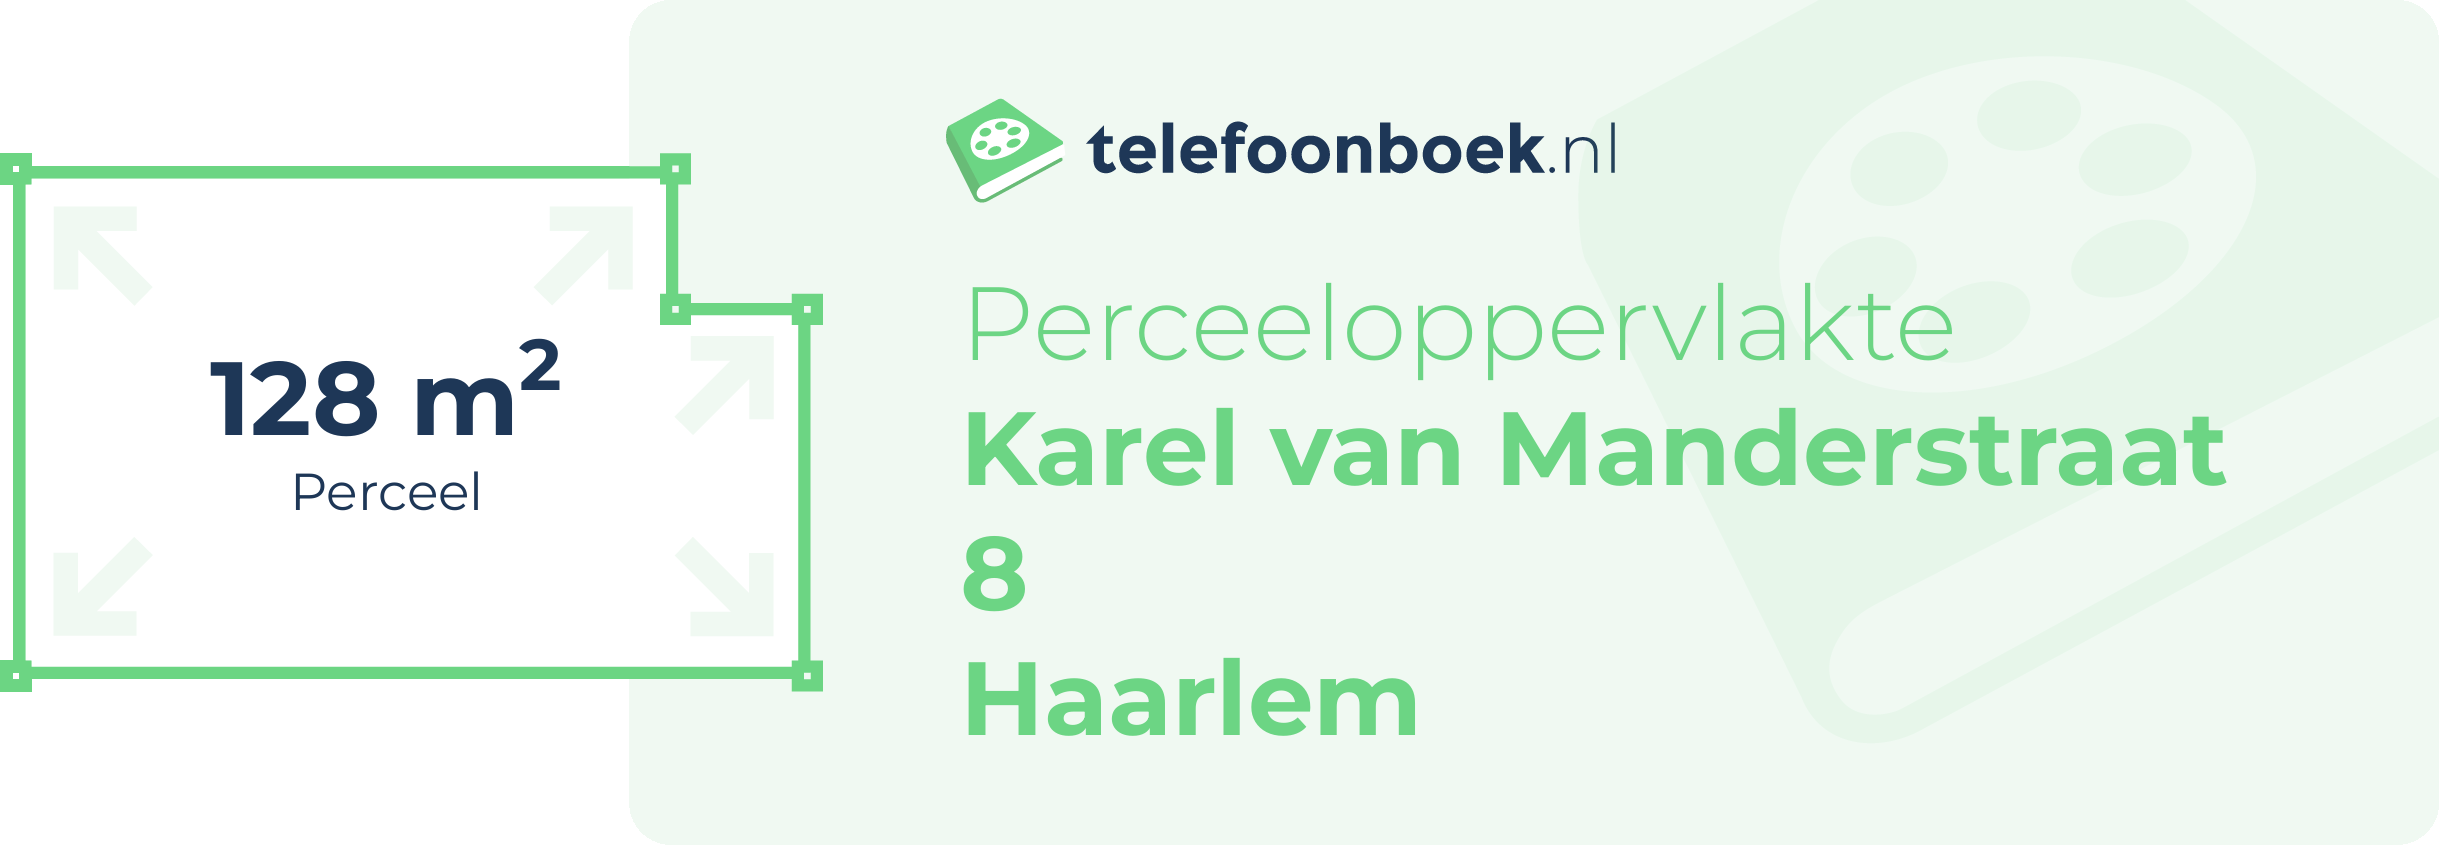 Perceeloppervlakte Karel Van Manderstraat 8 Haarlem